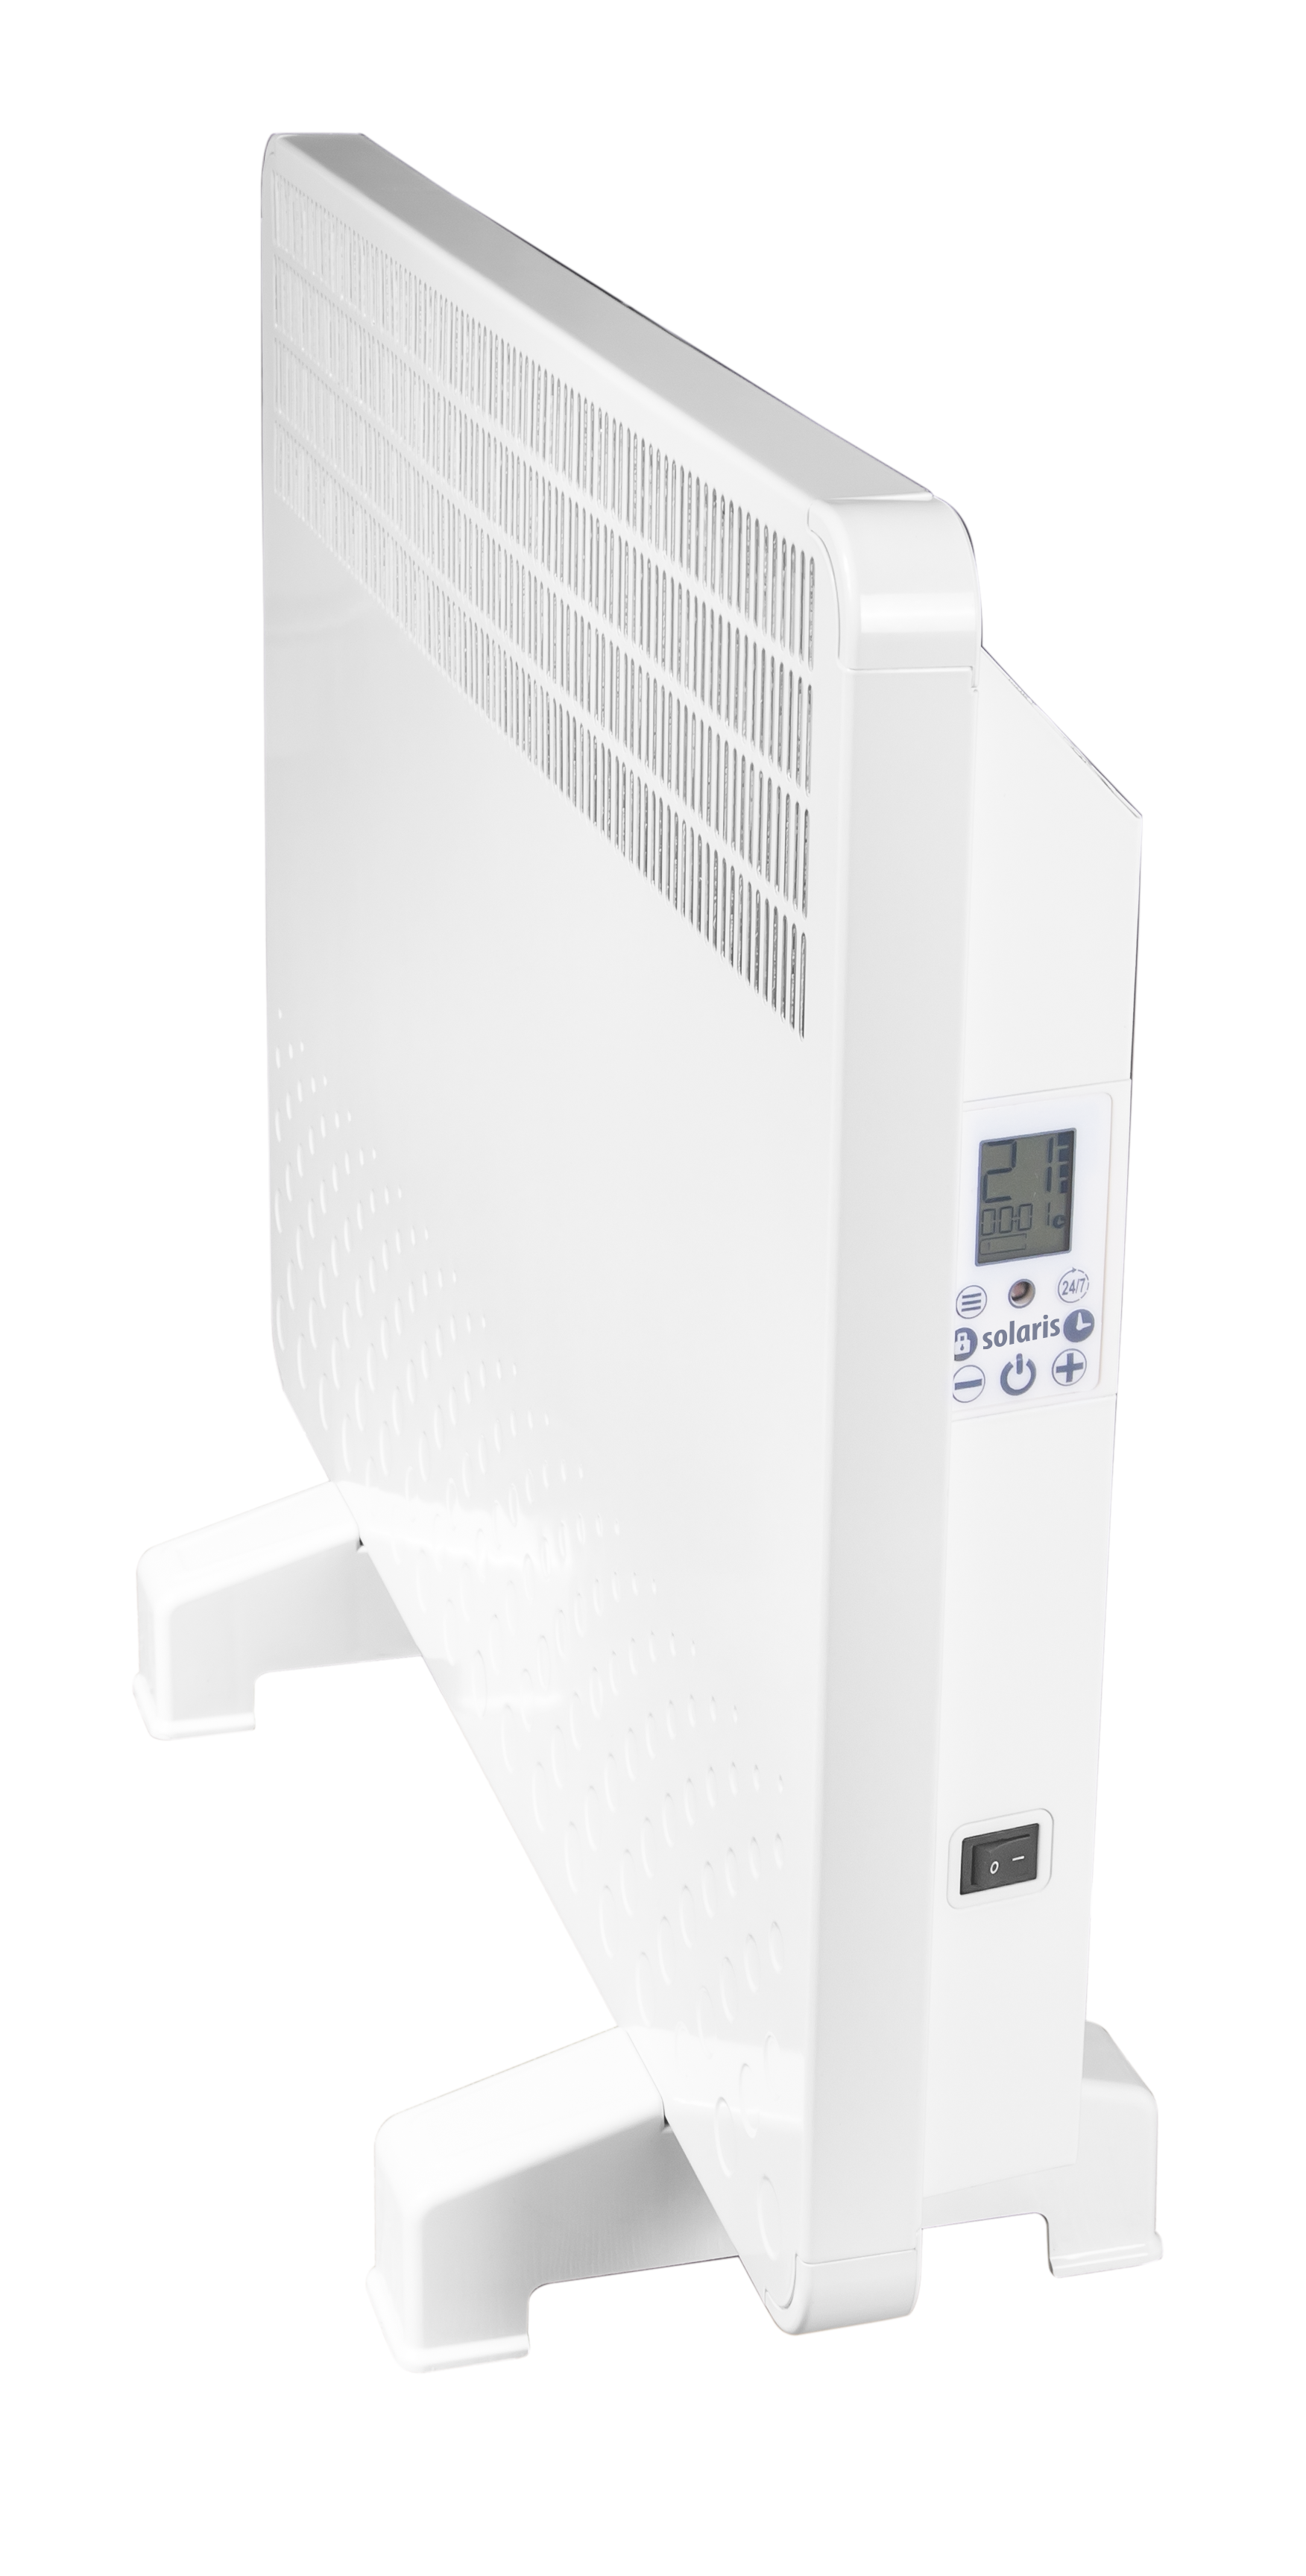 Convector electric de perete sau pardoseala Solaris KIP 1000 W, control electronic, Termostat de siguranta, termostat reglabil, IP 24, ERP 2018, pana la 12 mp fornello